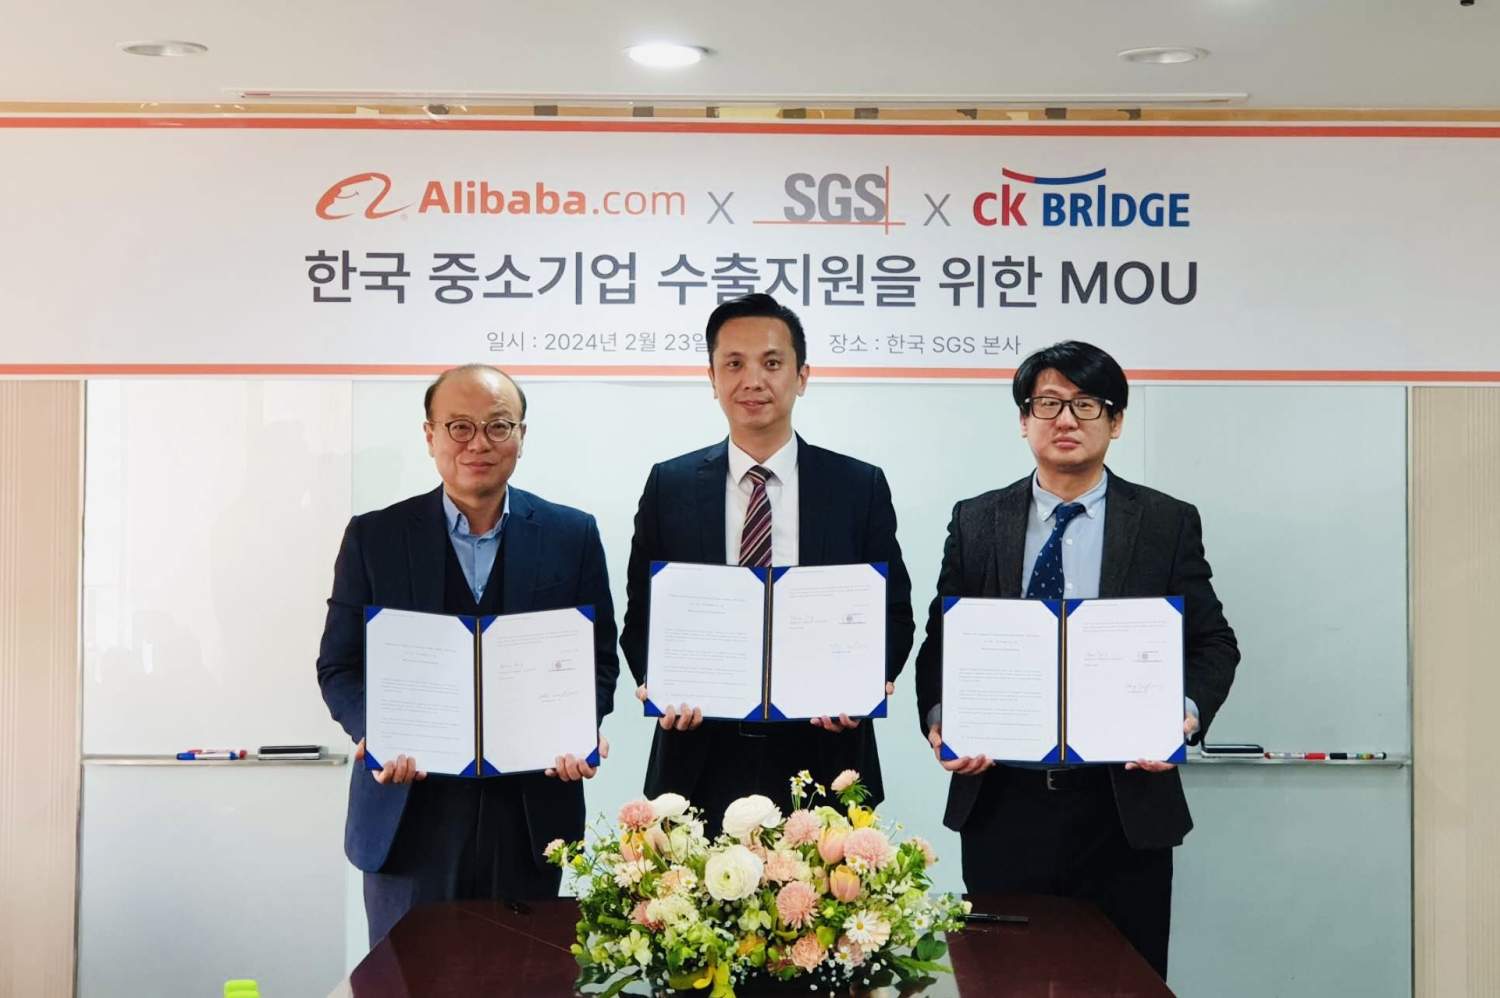 글로벌 선도적인 온라인 B2B 플랫폼 알리바바닷컴, 씨케이브릿지, 한국에스지에스 “해외 수출을 위한 인증” MOU 체결